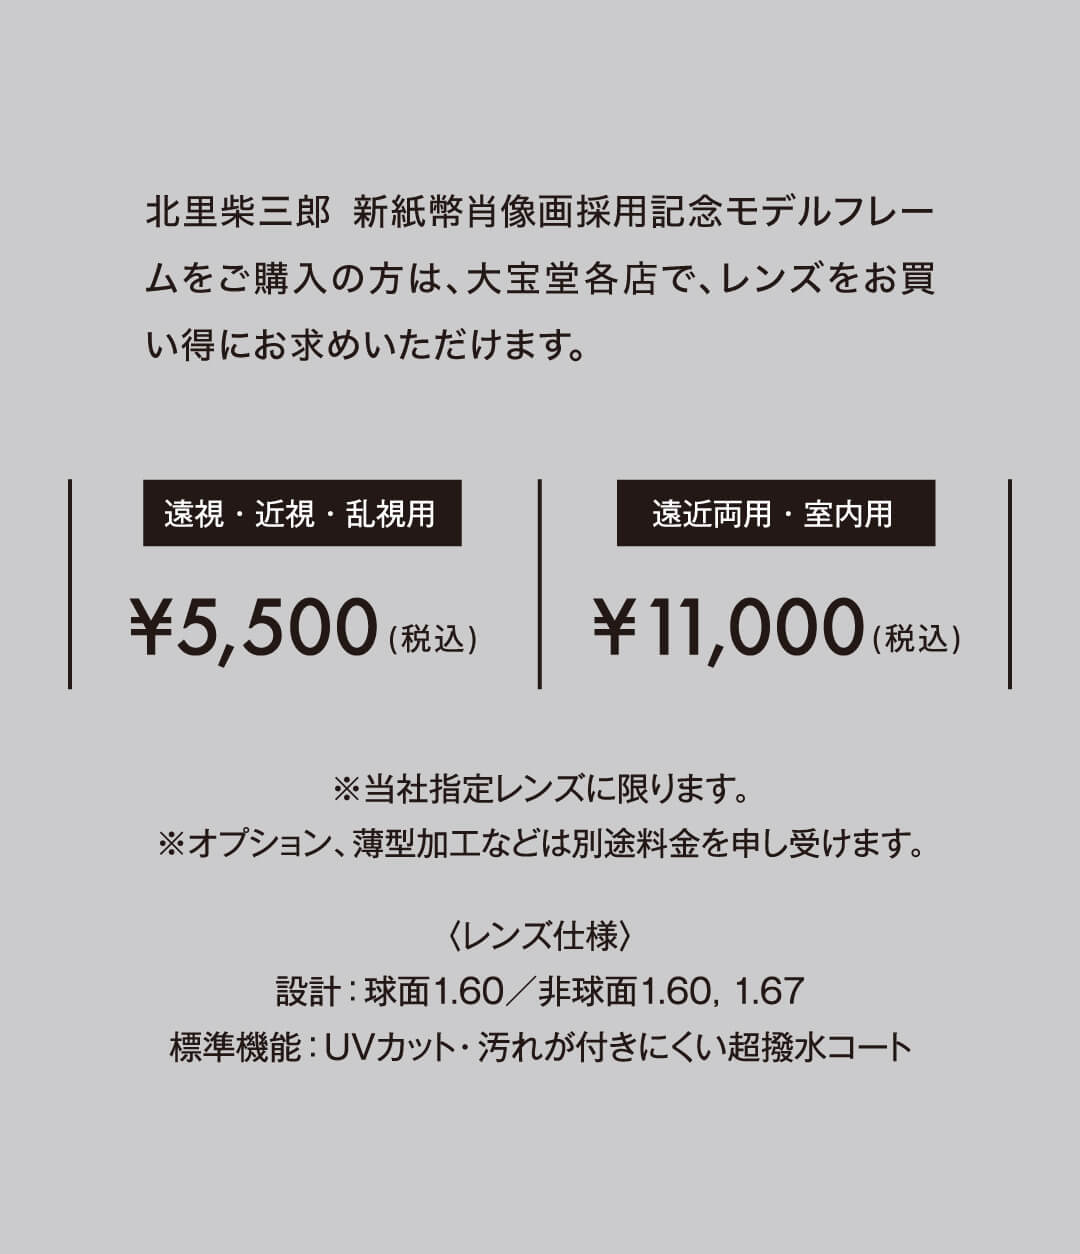 北里柴三郎 新紙幣肖像画採用記念モデルフレームをご購入の方は、大宝堂各店で、レンズがお買い得